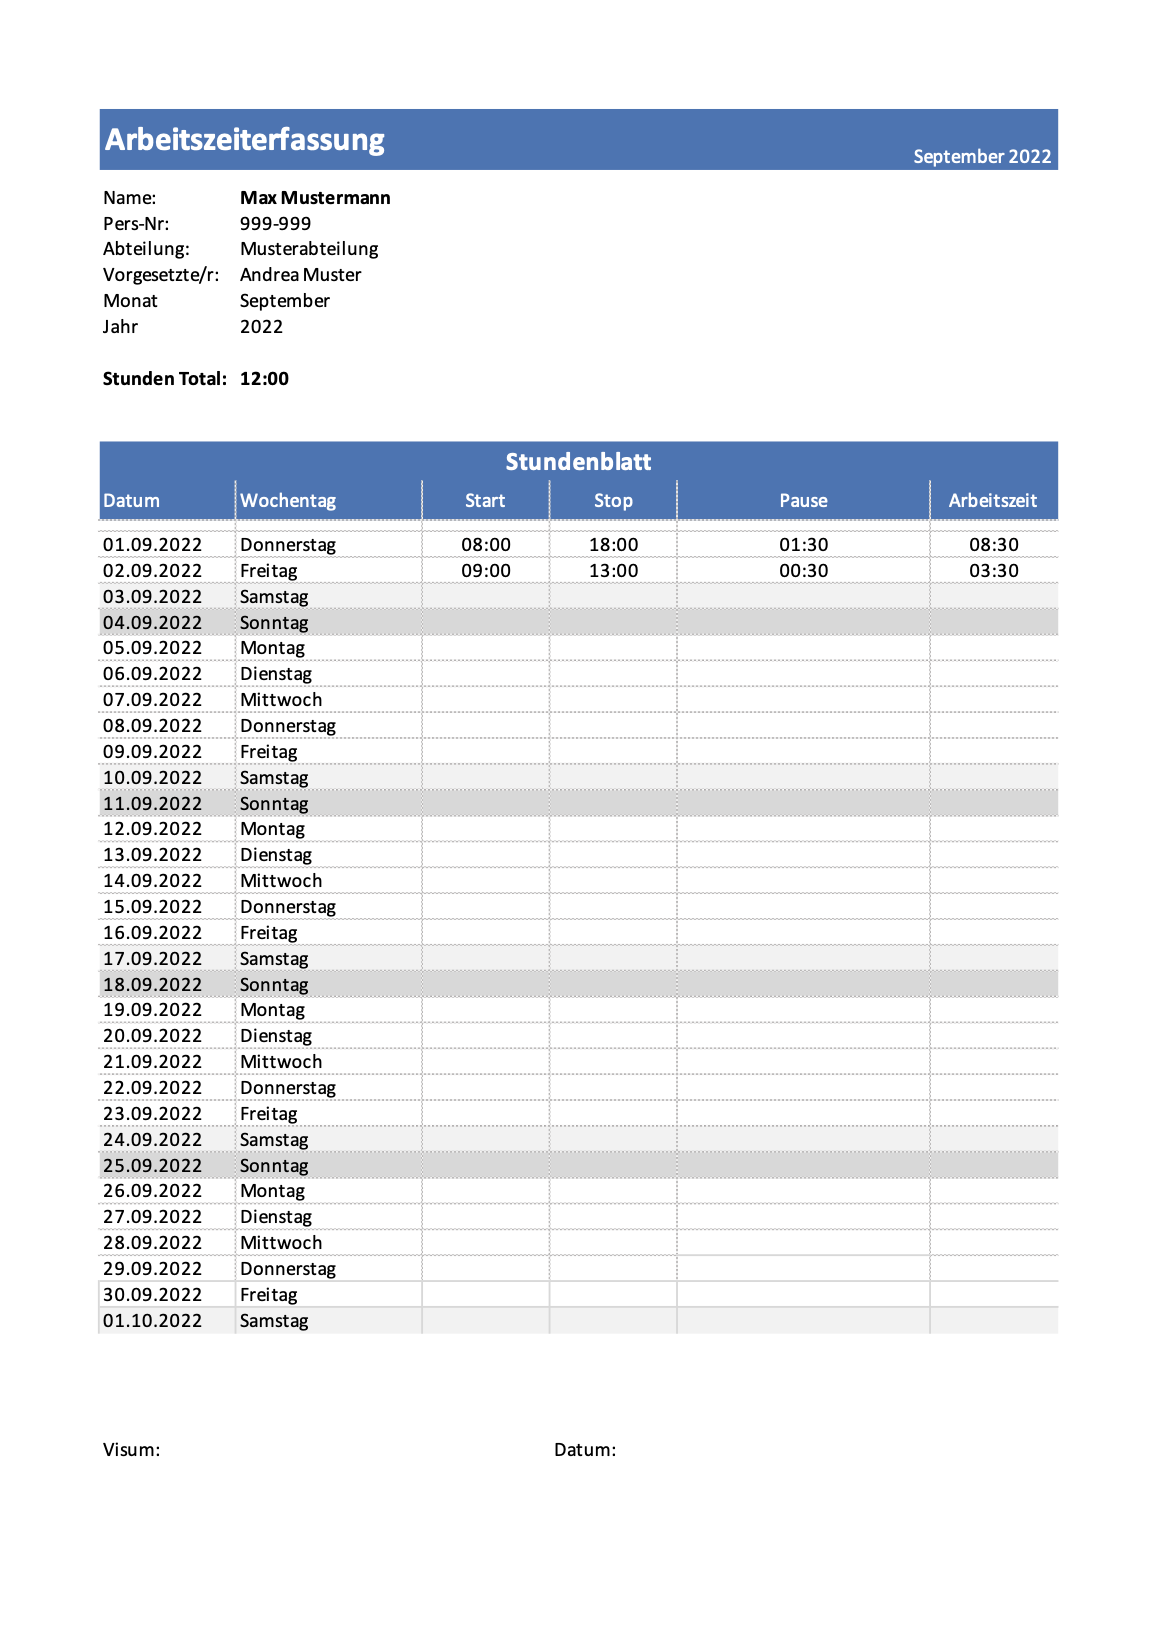 Arbeitszeiterfassung Excel